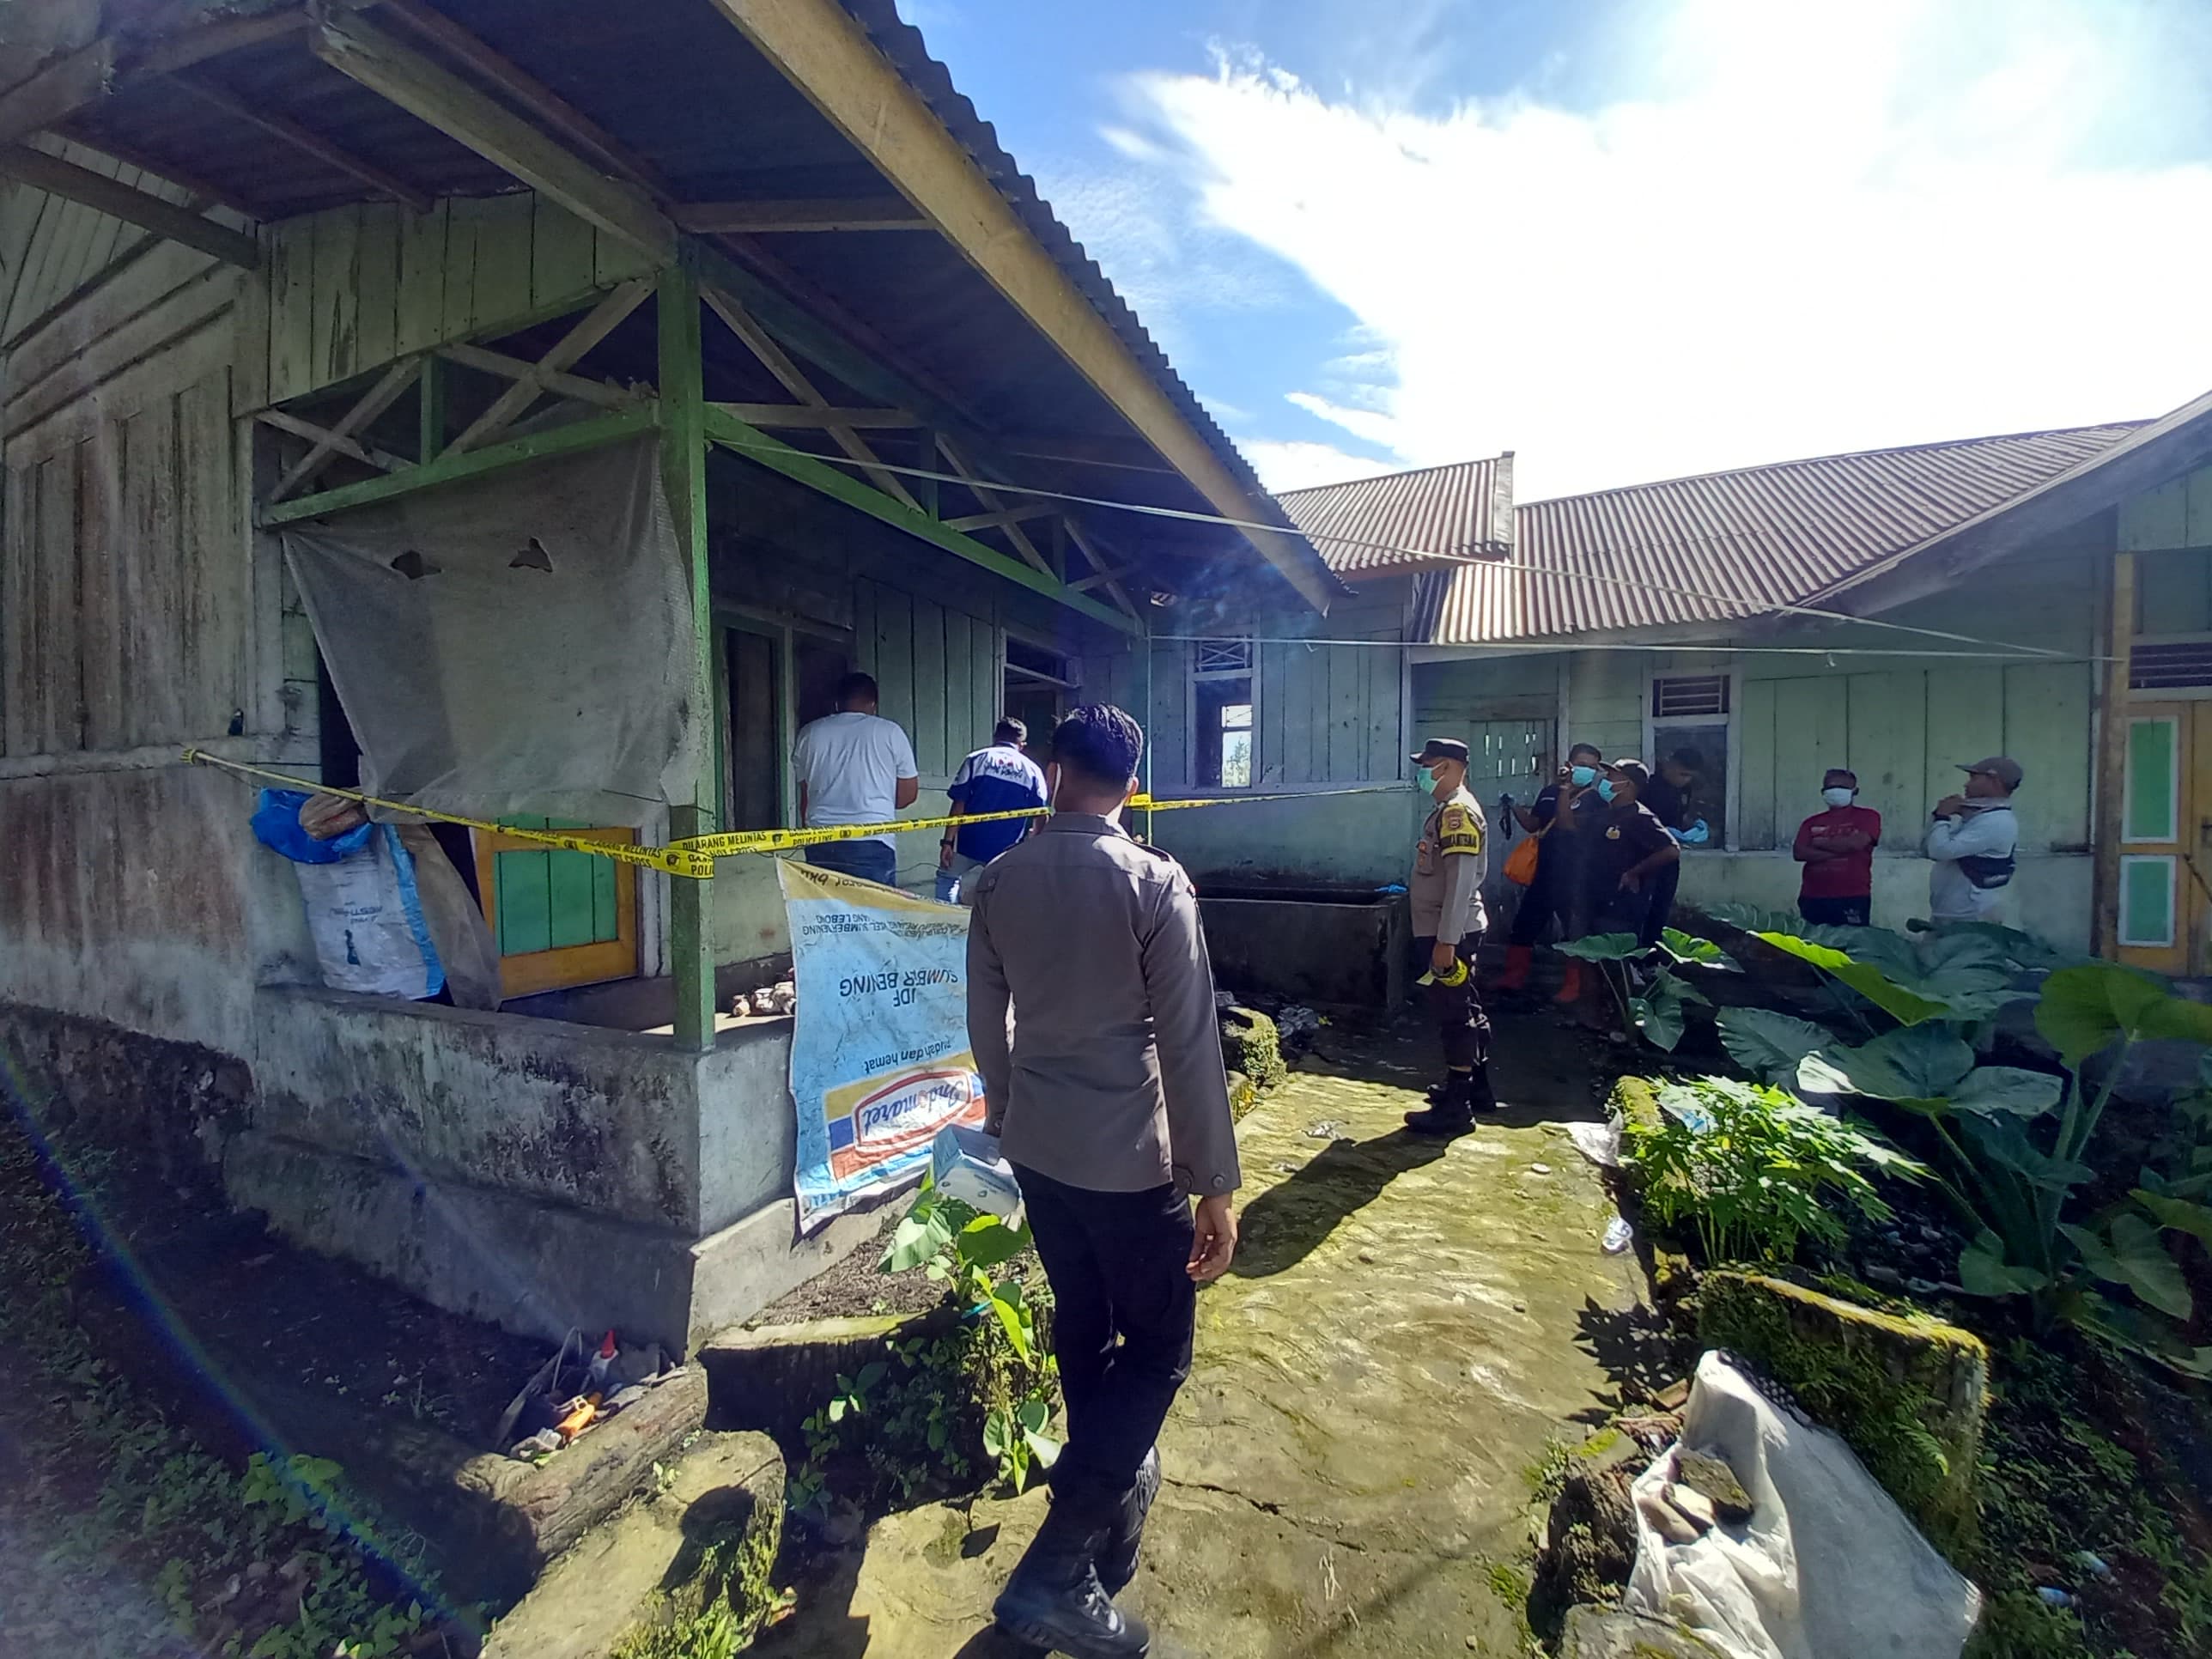 Jadi Barang Bukti, Polisi Temukan Obat di TKP Penemuan Mayat Warga Dusun Curup